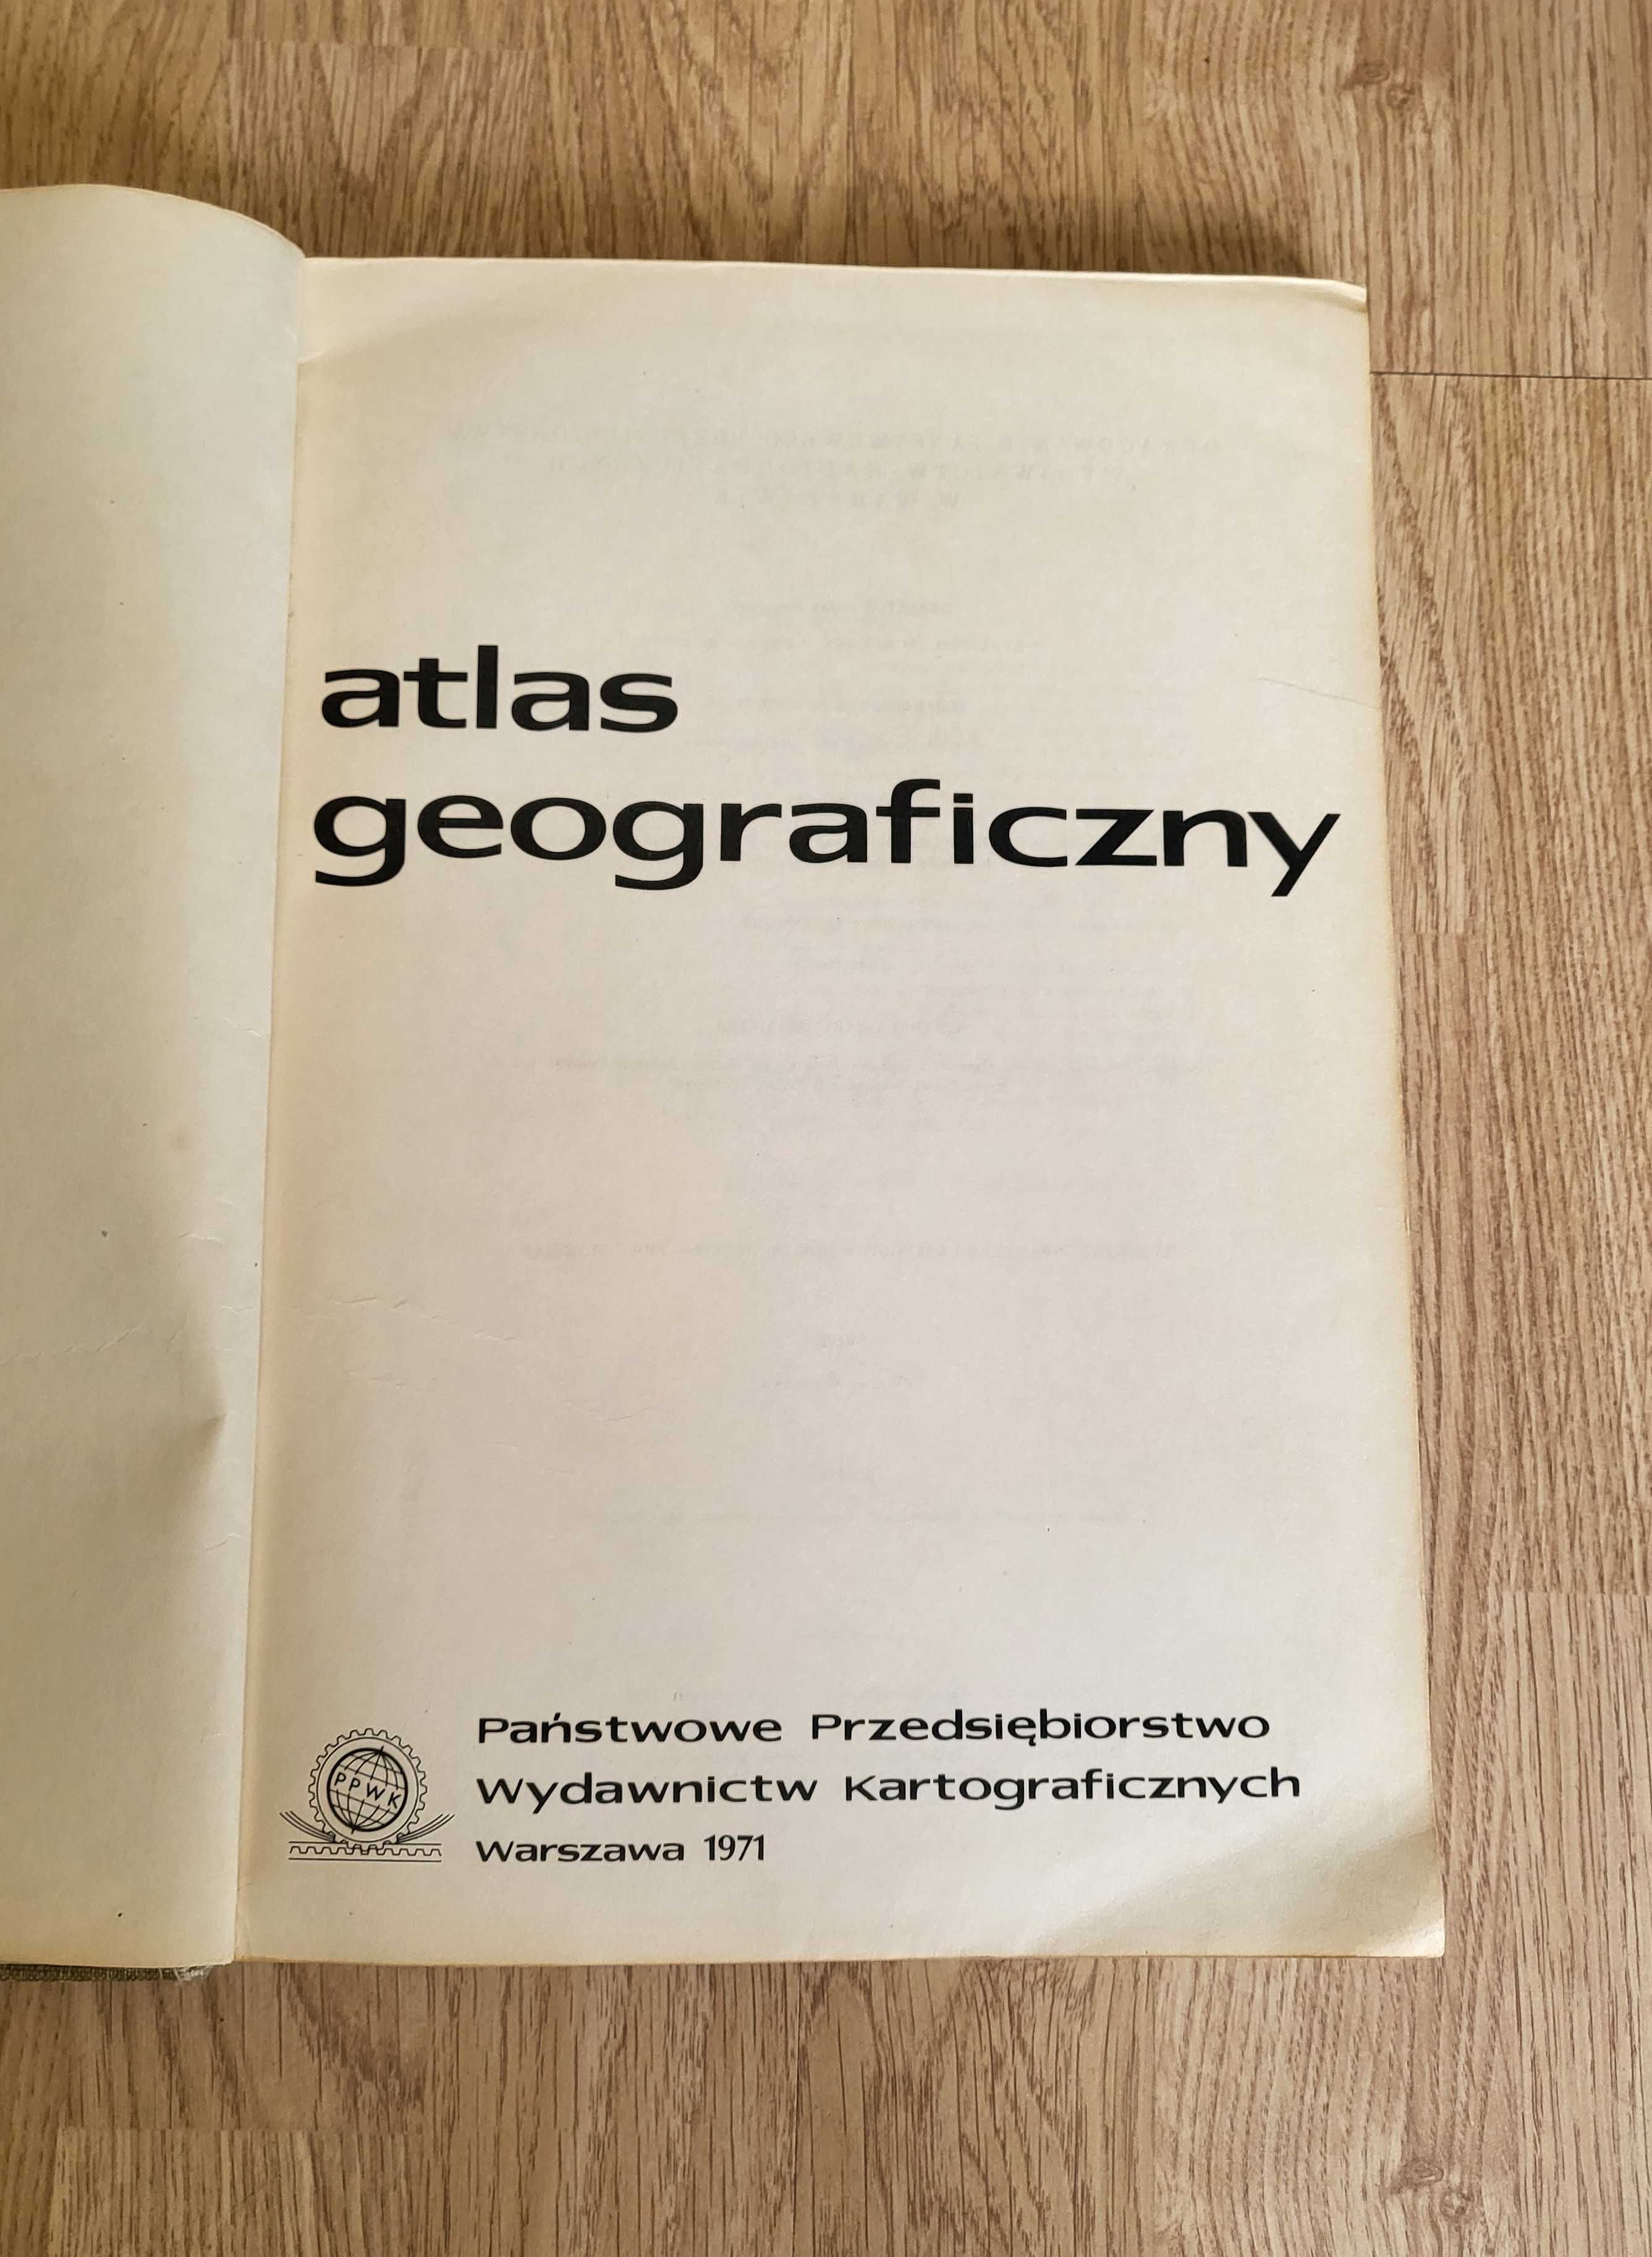 Atlas geograficzny Państwowe Przed wydawnictw Kartograficznych 1971